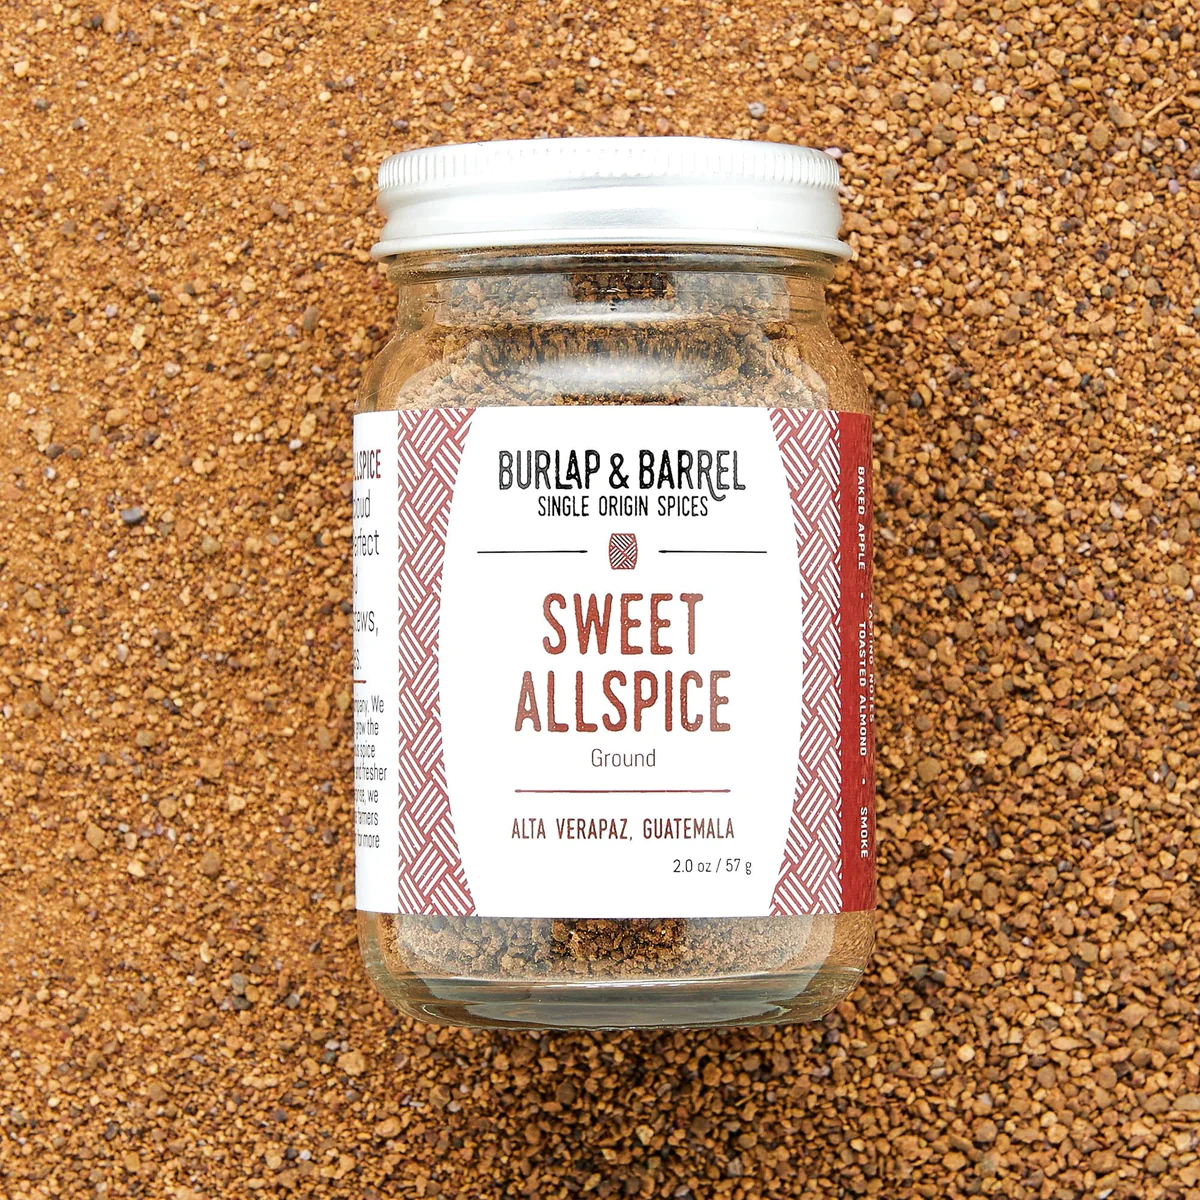 Sweet Allspice by Burlap & Barrel